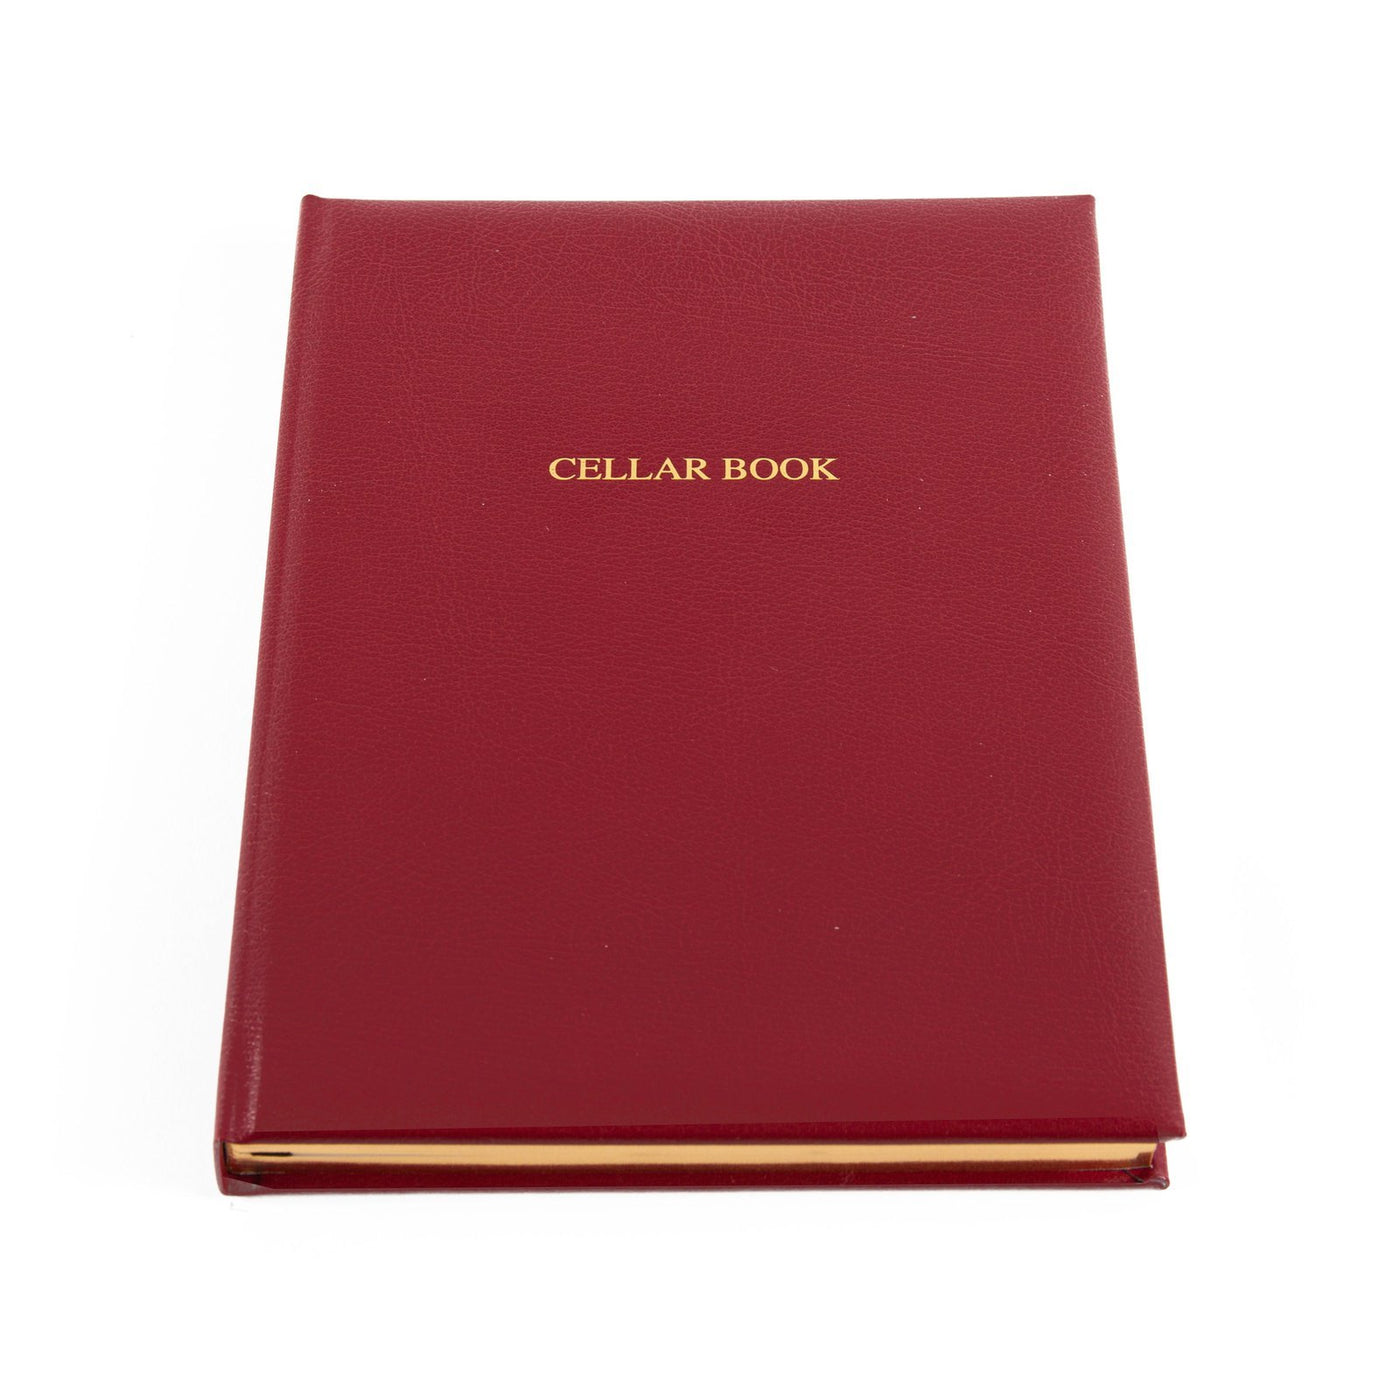 claret wine cellar book